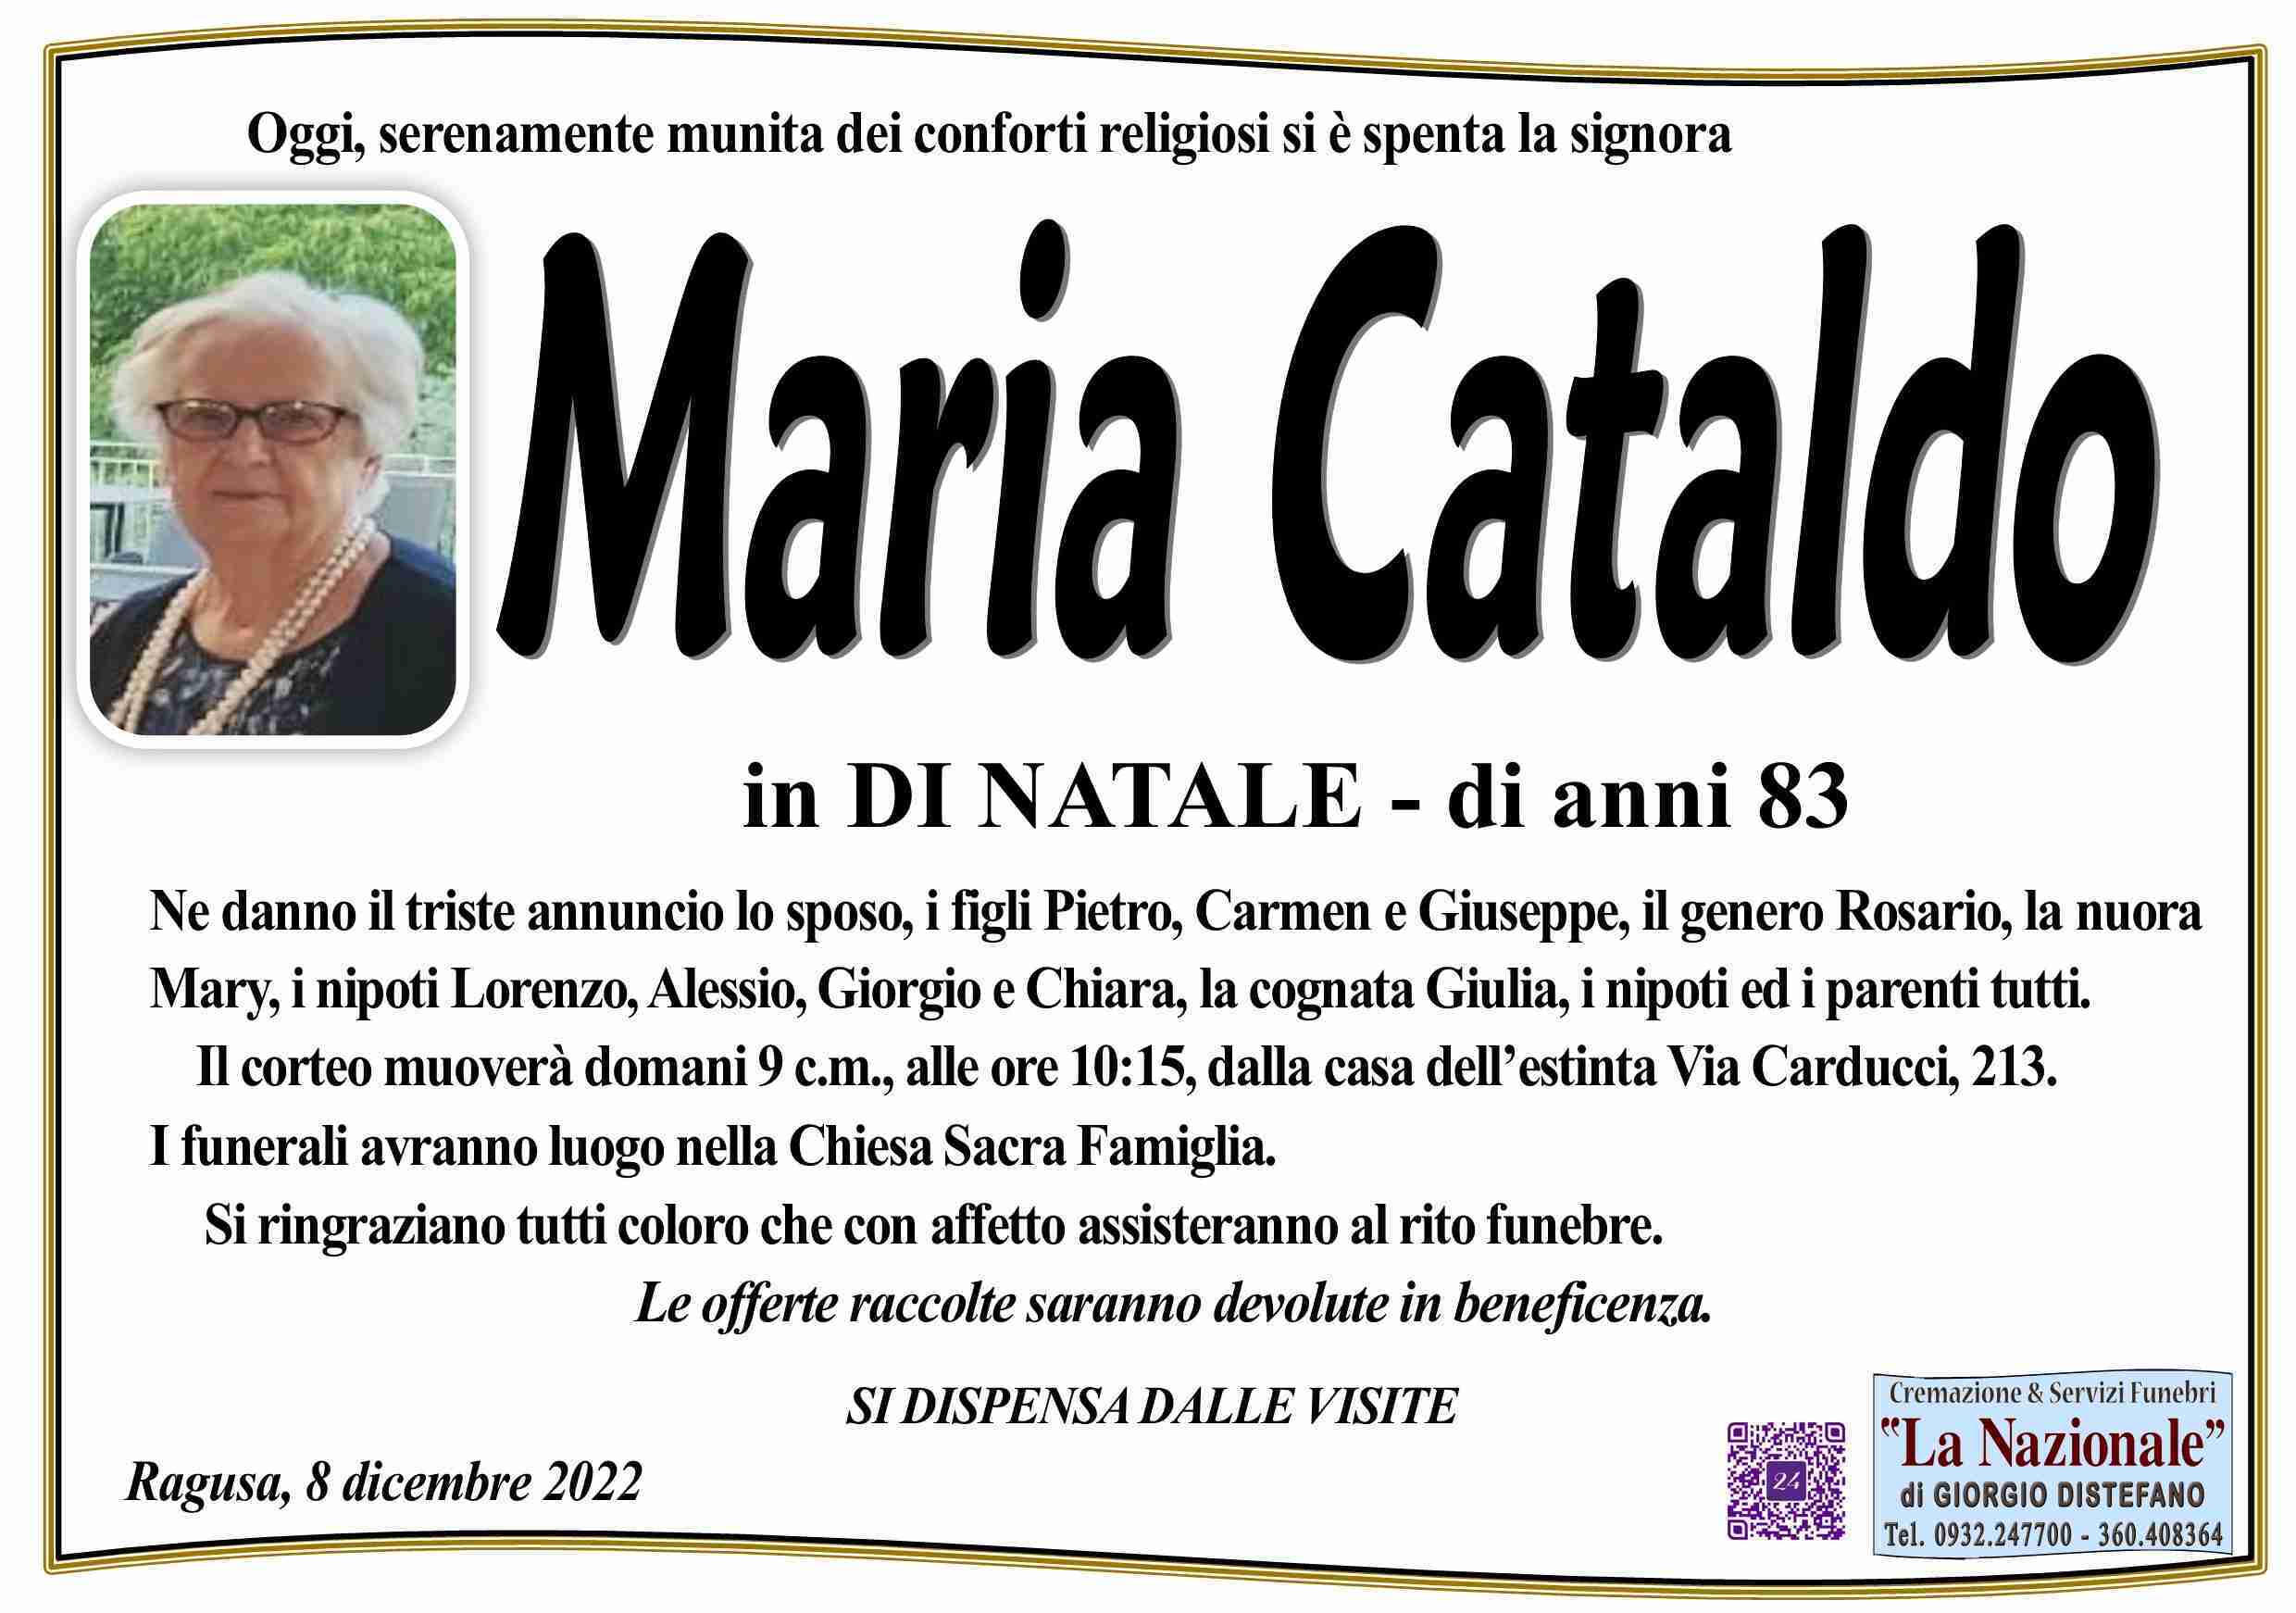 Maria Cataldo